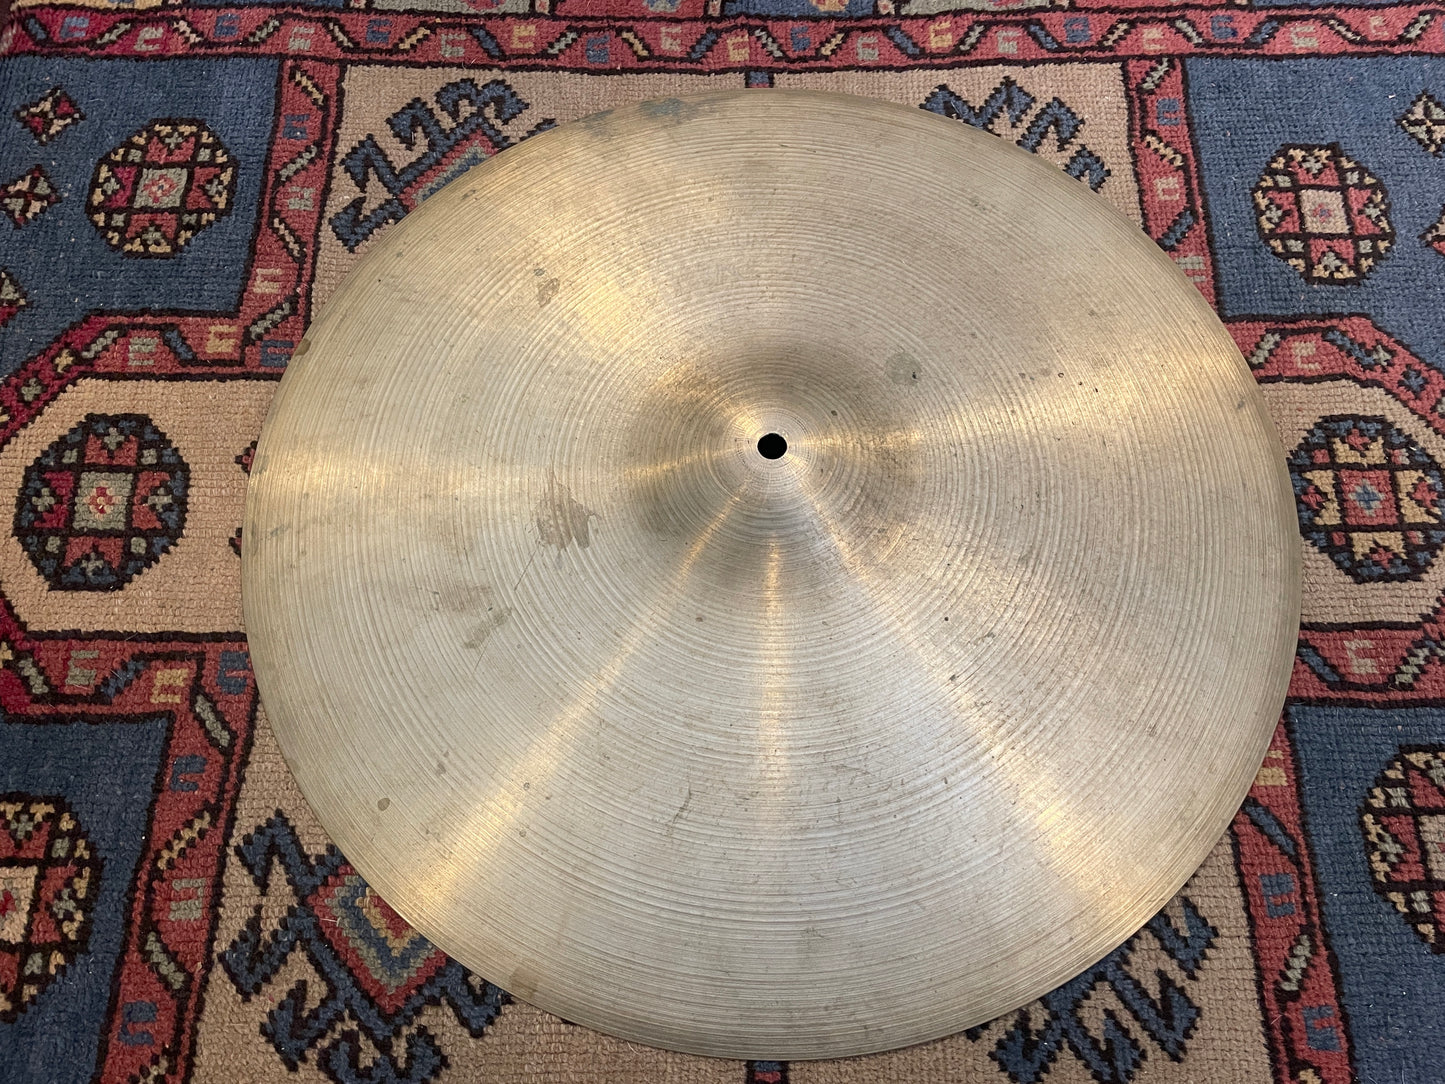 20" Zildjian A 1960s Ride Cymbal 2230g #867